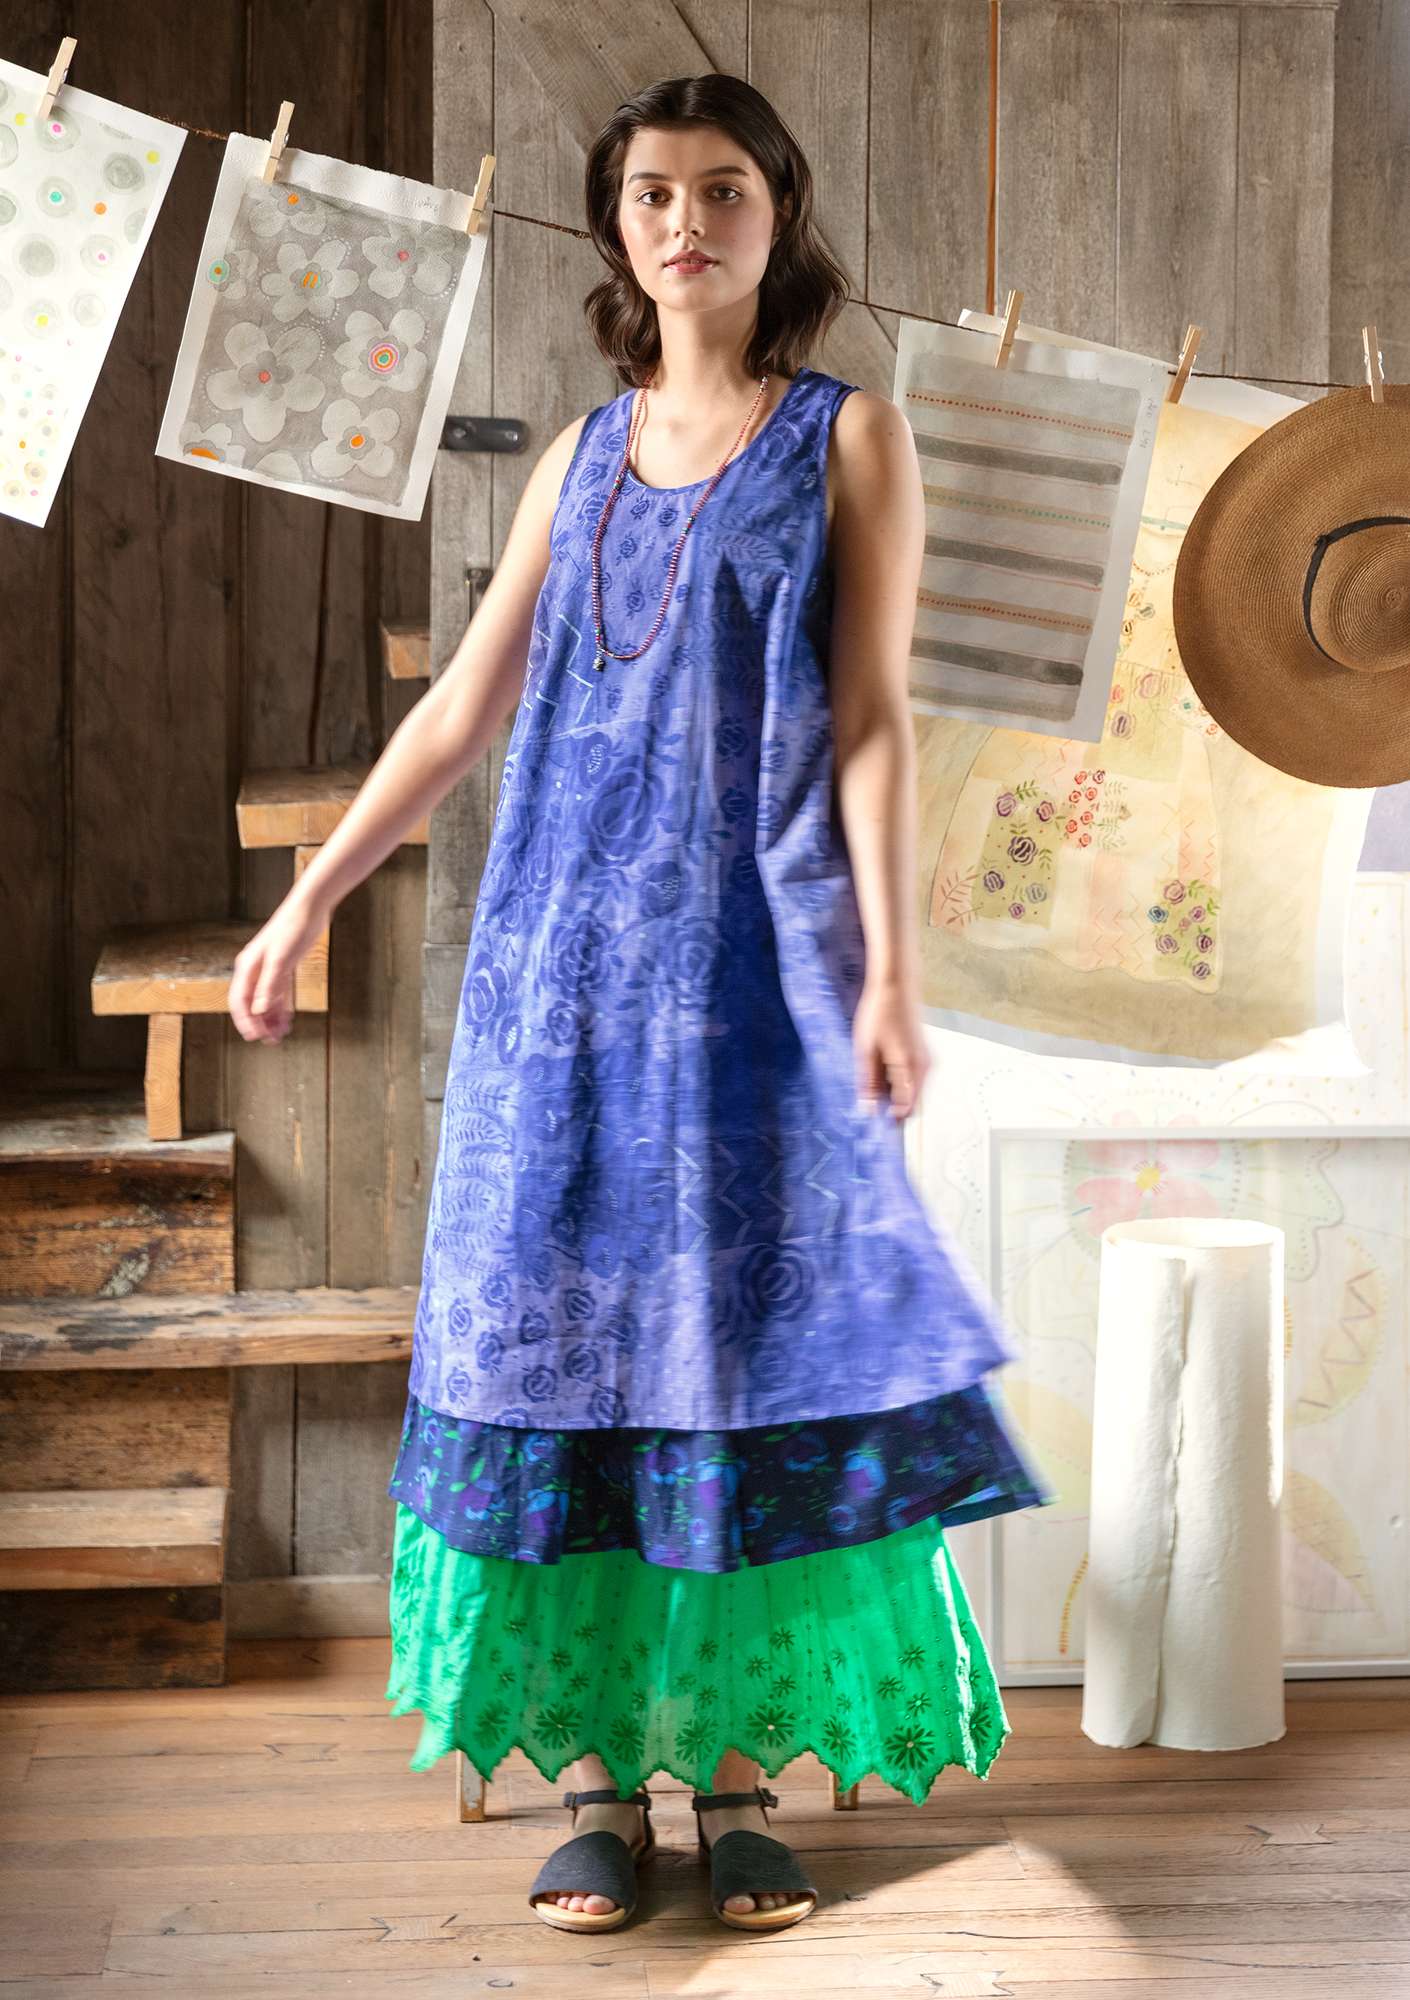 Ermeløs, vevd kjole «Rosewood» i økologisk bomull lupin